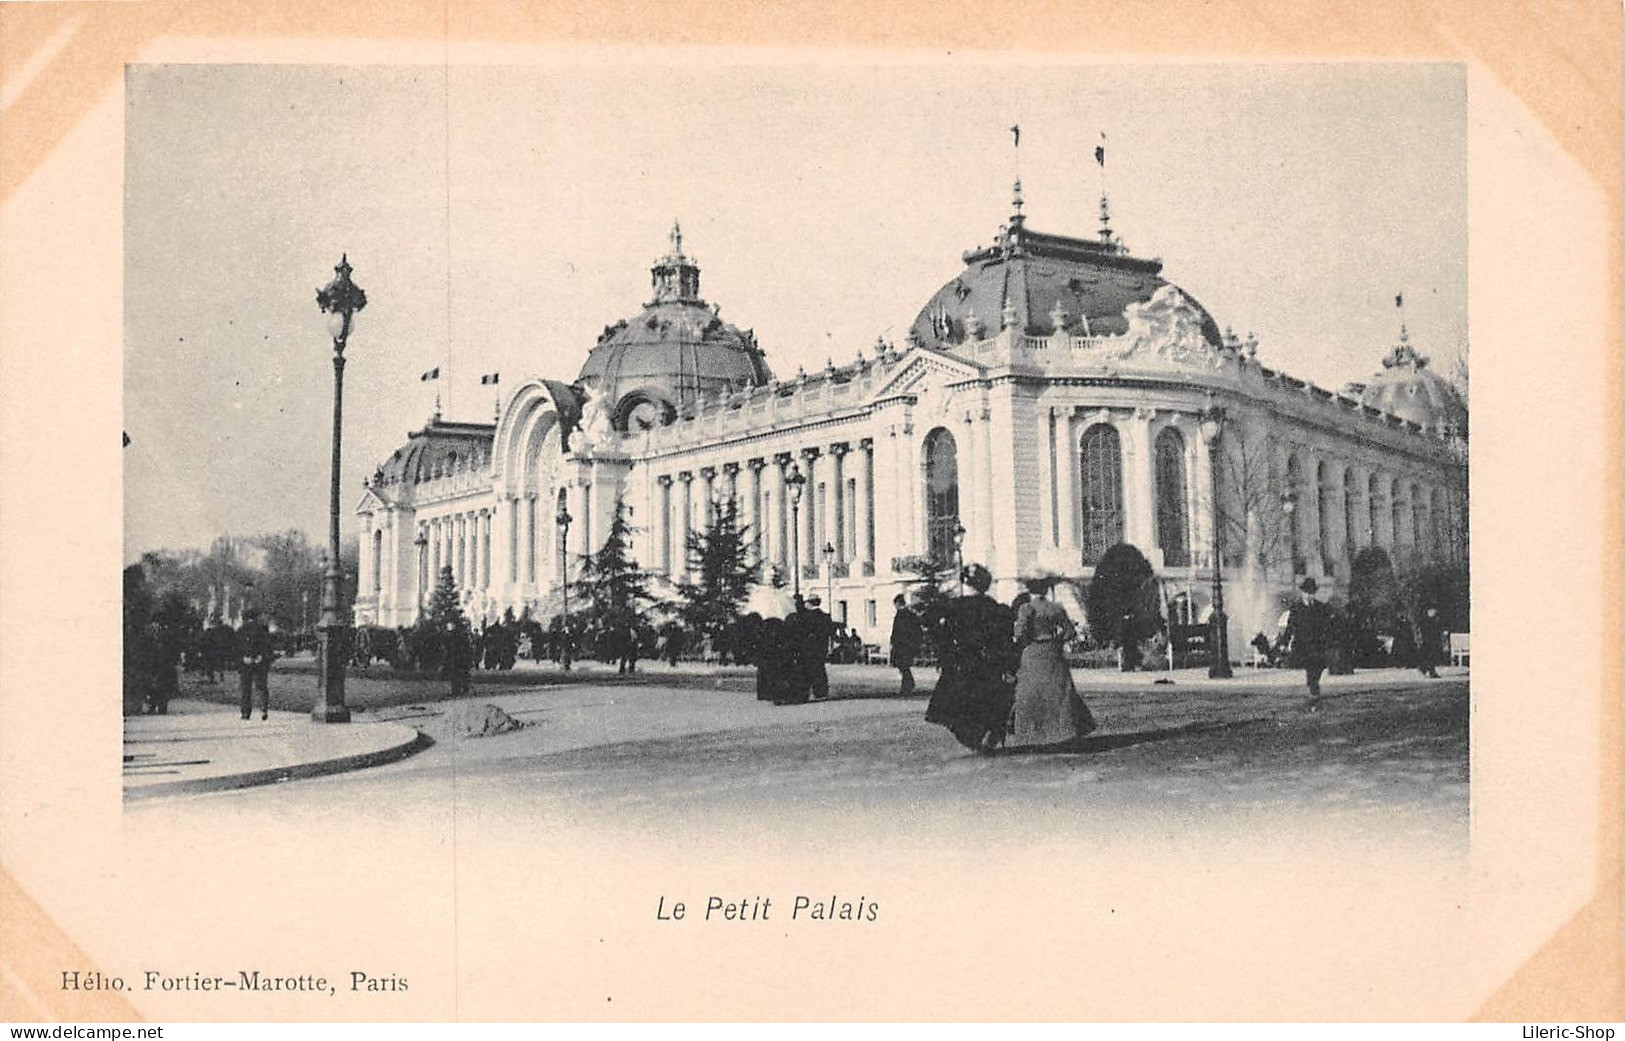 ►PARIS◄75►PRÉCURSEUR◄CPA►EXPOSITION UNIVERSELLE 1900◄LE PETIT PALAIS►HÉLIO FORTIER-MAROTTE, PARIS - Ausstellungen